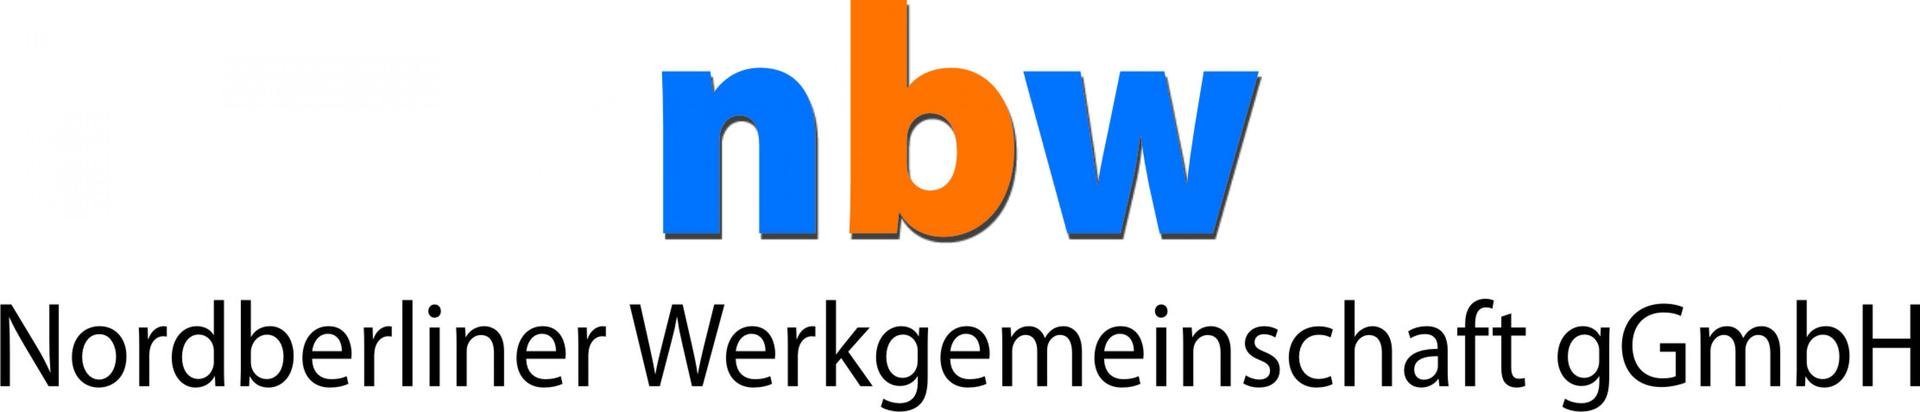 NBW Nordberliner Werkgemeinschaft gGmbH Logo